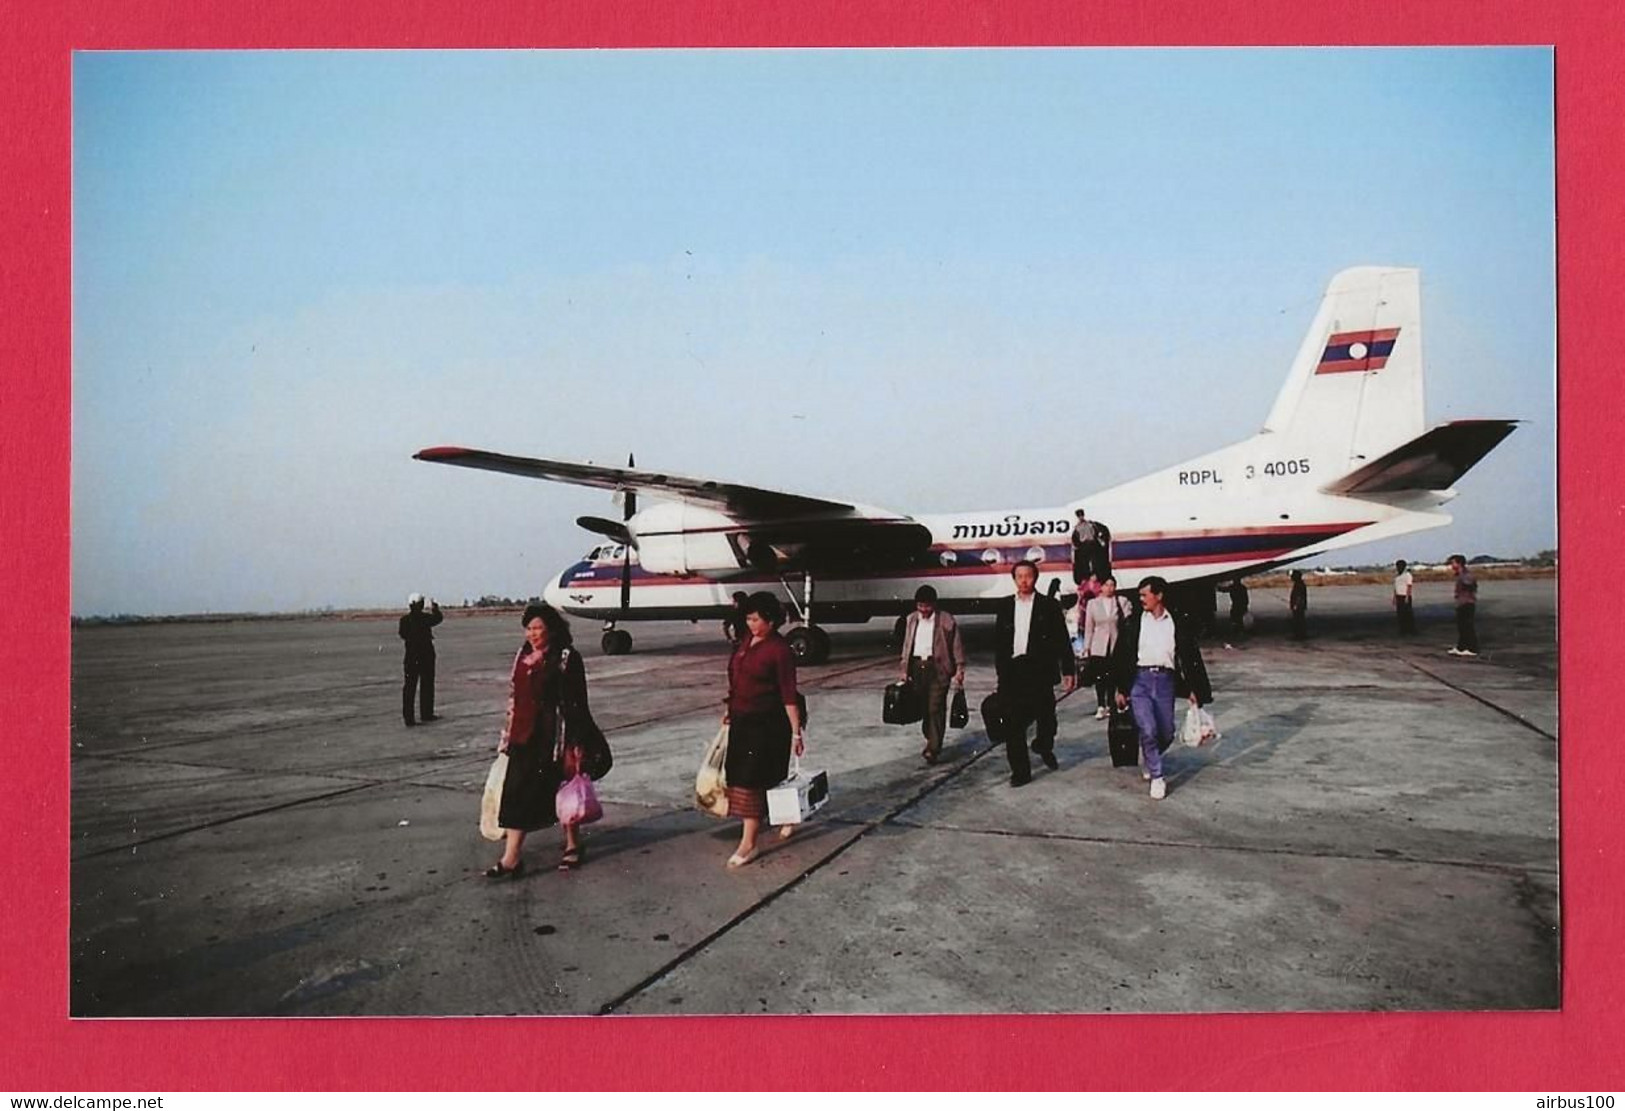 BELLE PHOTO REPRODUCTION AVION PLANE LAOS - LAO AIRLINES AVION XIAN Y-7 PASSAGERS SUR LE TARMAC - Aviazione